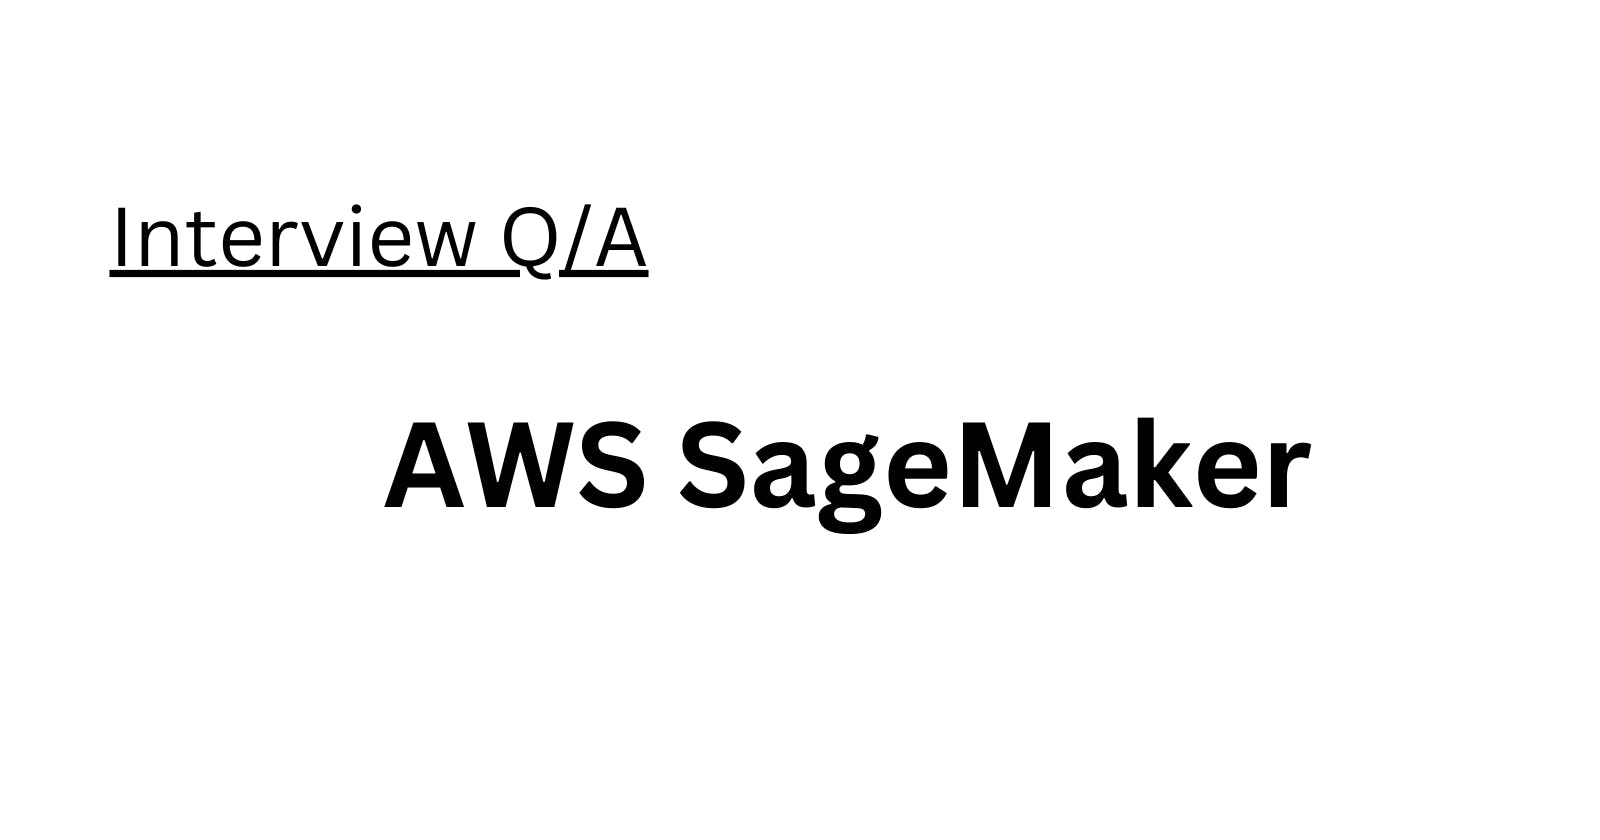 AWS SageMaker Interview Q/A